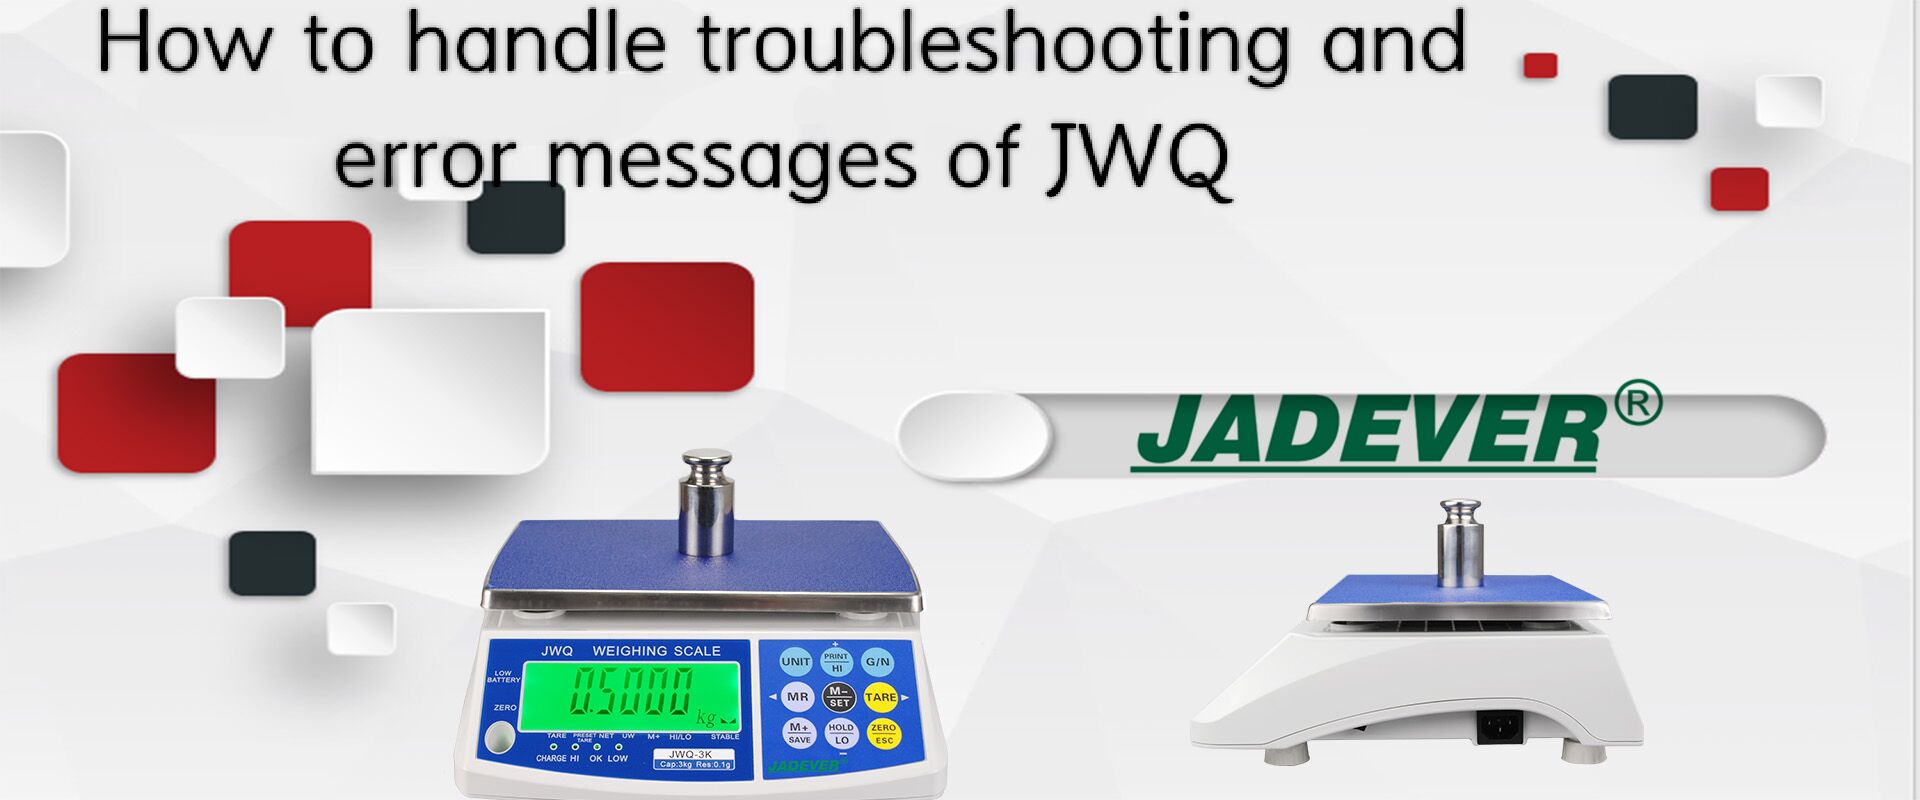 JWQ のトラブルシューティングとエラー メッセージの処理方法は?
